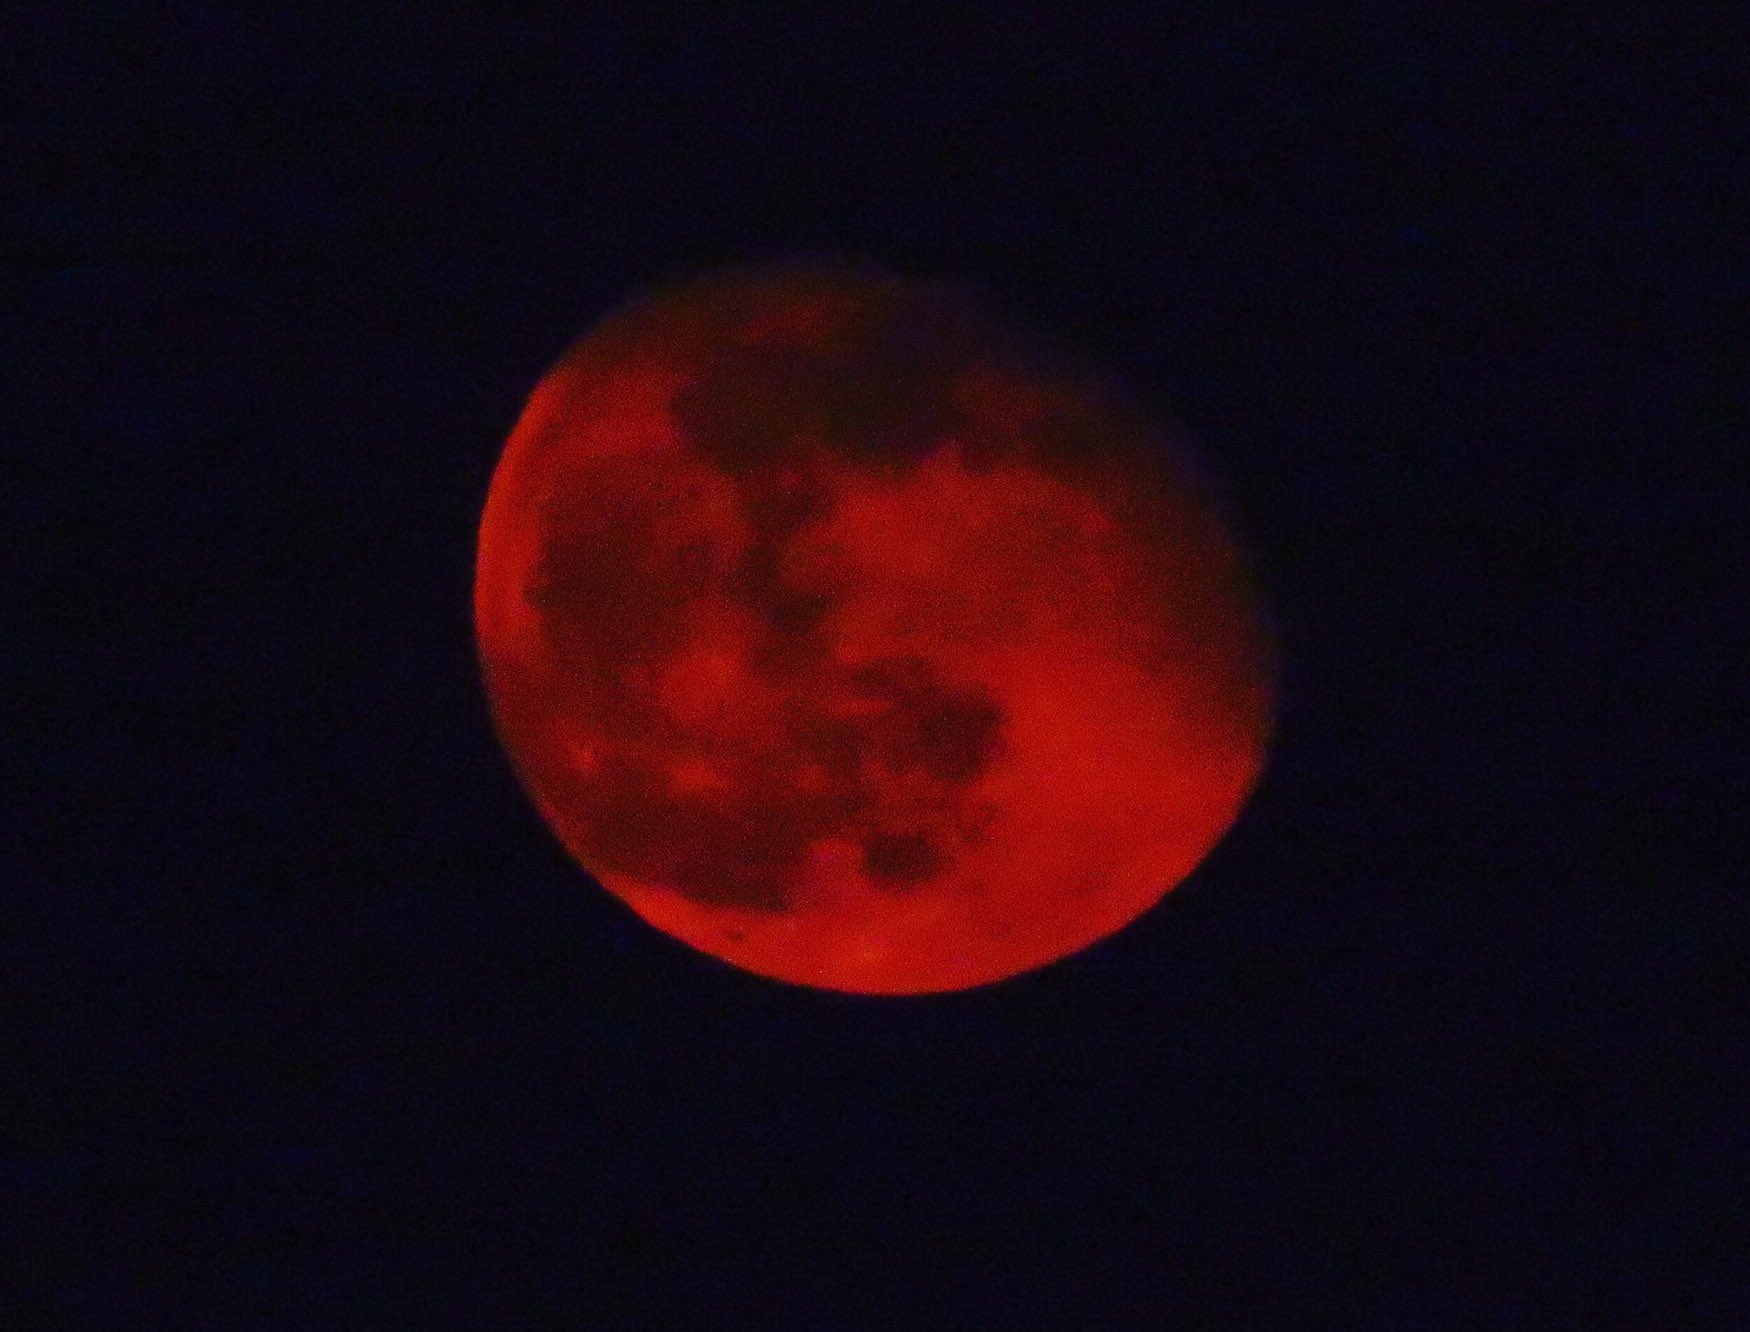 荒木健太郎 今夜は今年最も小さな満月 の ストロベリームーン 赤っぽい色だからこの呼び名なのではなく 元来アメリカでのイチゴ収穫期 6月 の満月だからだそう 赤っぽい月は大気層を通る月光がレイリー散乱の影響を受けたもので 月の高度が低い時に